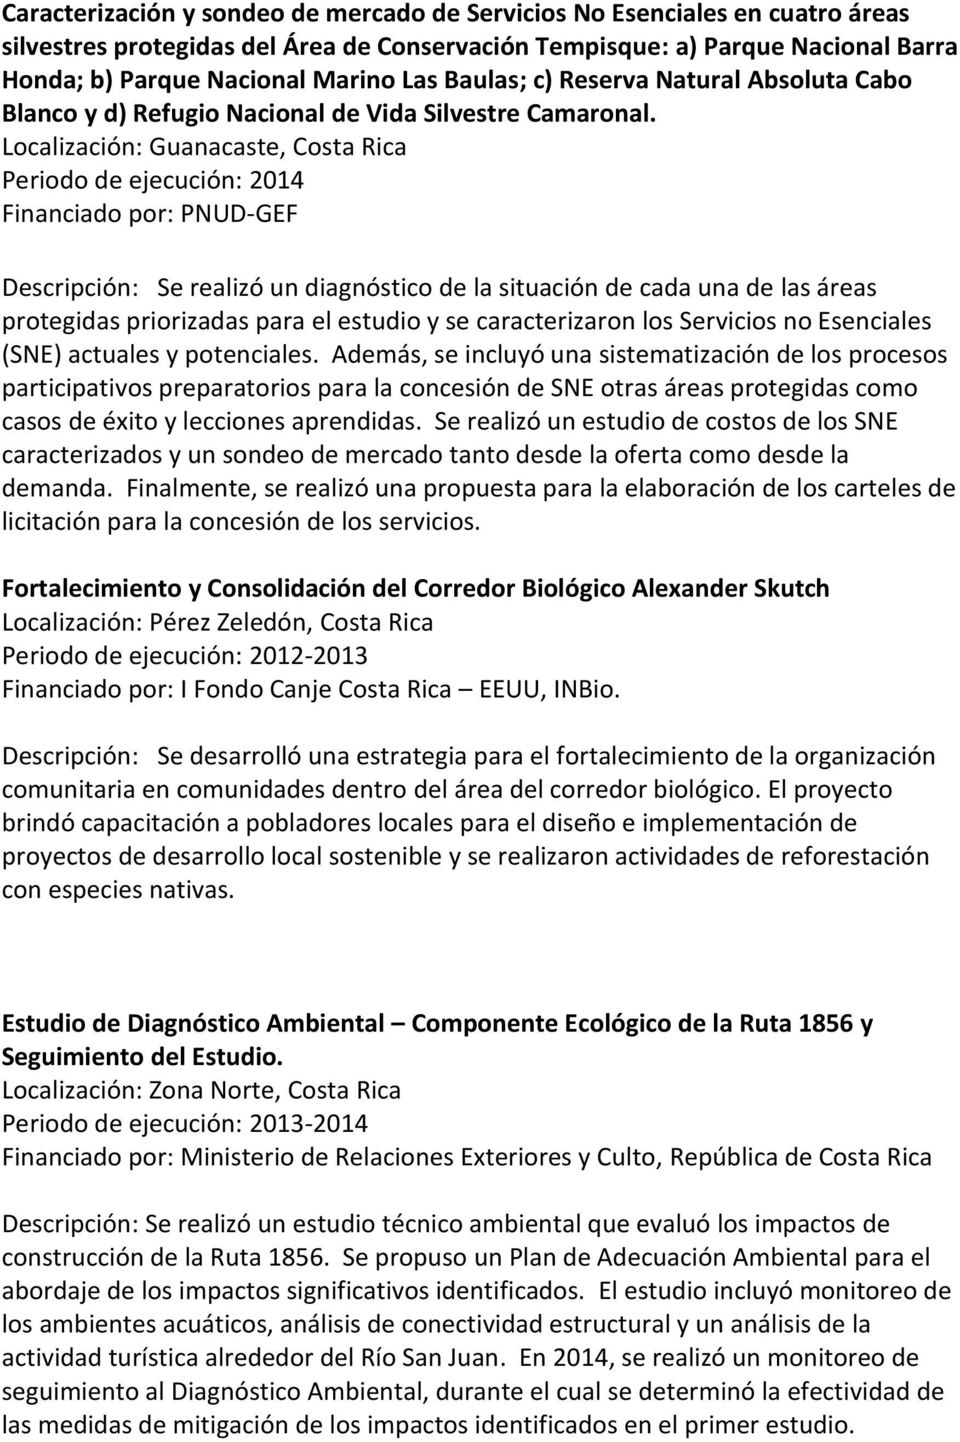 Localización: Guanacaste, Costa Rica Periodo de ejecución: 2014 Financiado por: PNUD-GEF Descripción: Se realizó un diagnóstico de la situación de cada una de las áreas protegidas priorizadas para el